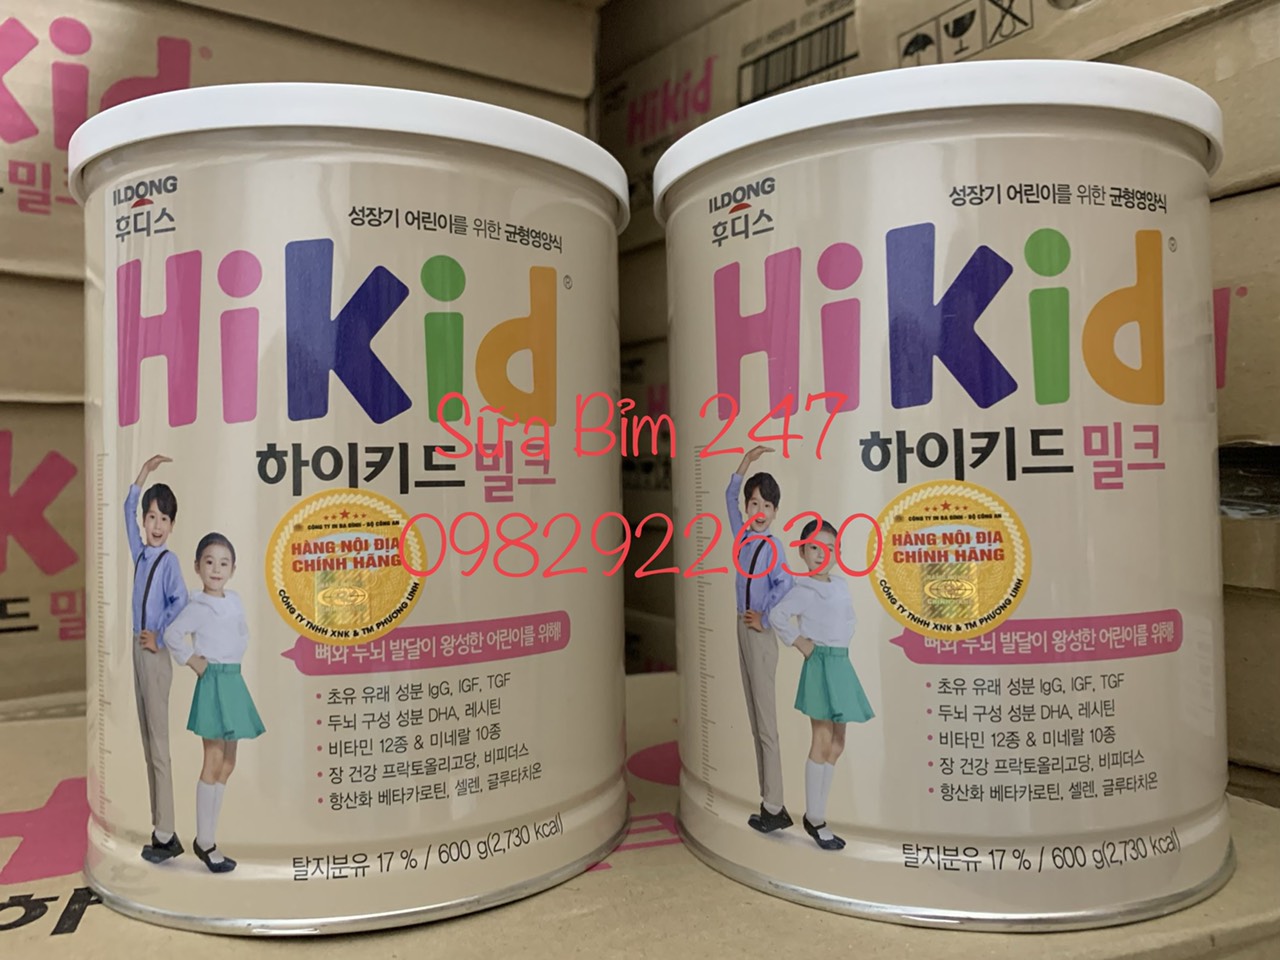 Sữa HiKid Hàn Quốc GIÁ RẺ NHẤT thị trường | Nhà phân phối Sữa HiKid | Địa chỉ Bán Buôn Sữa HiKid | Tổng kho Phân Phối, Bán Buôn Bán Sỉ Sữa HiKid 0982922630 SỮA BỈM 247